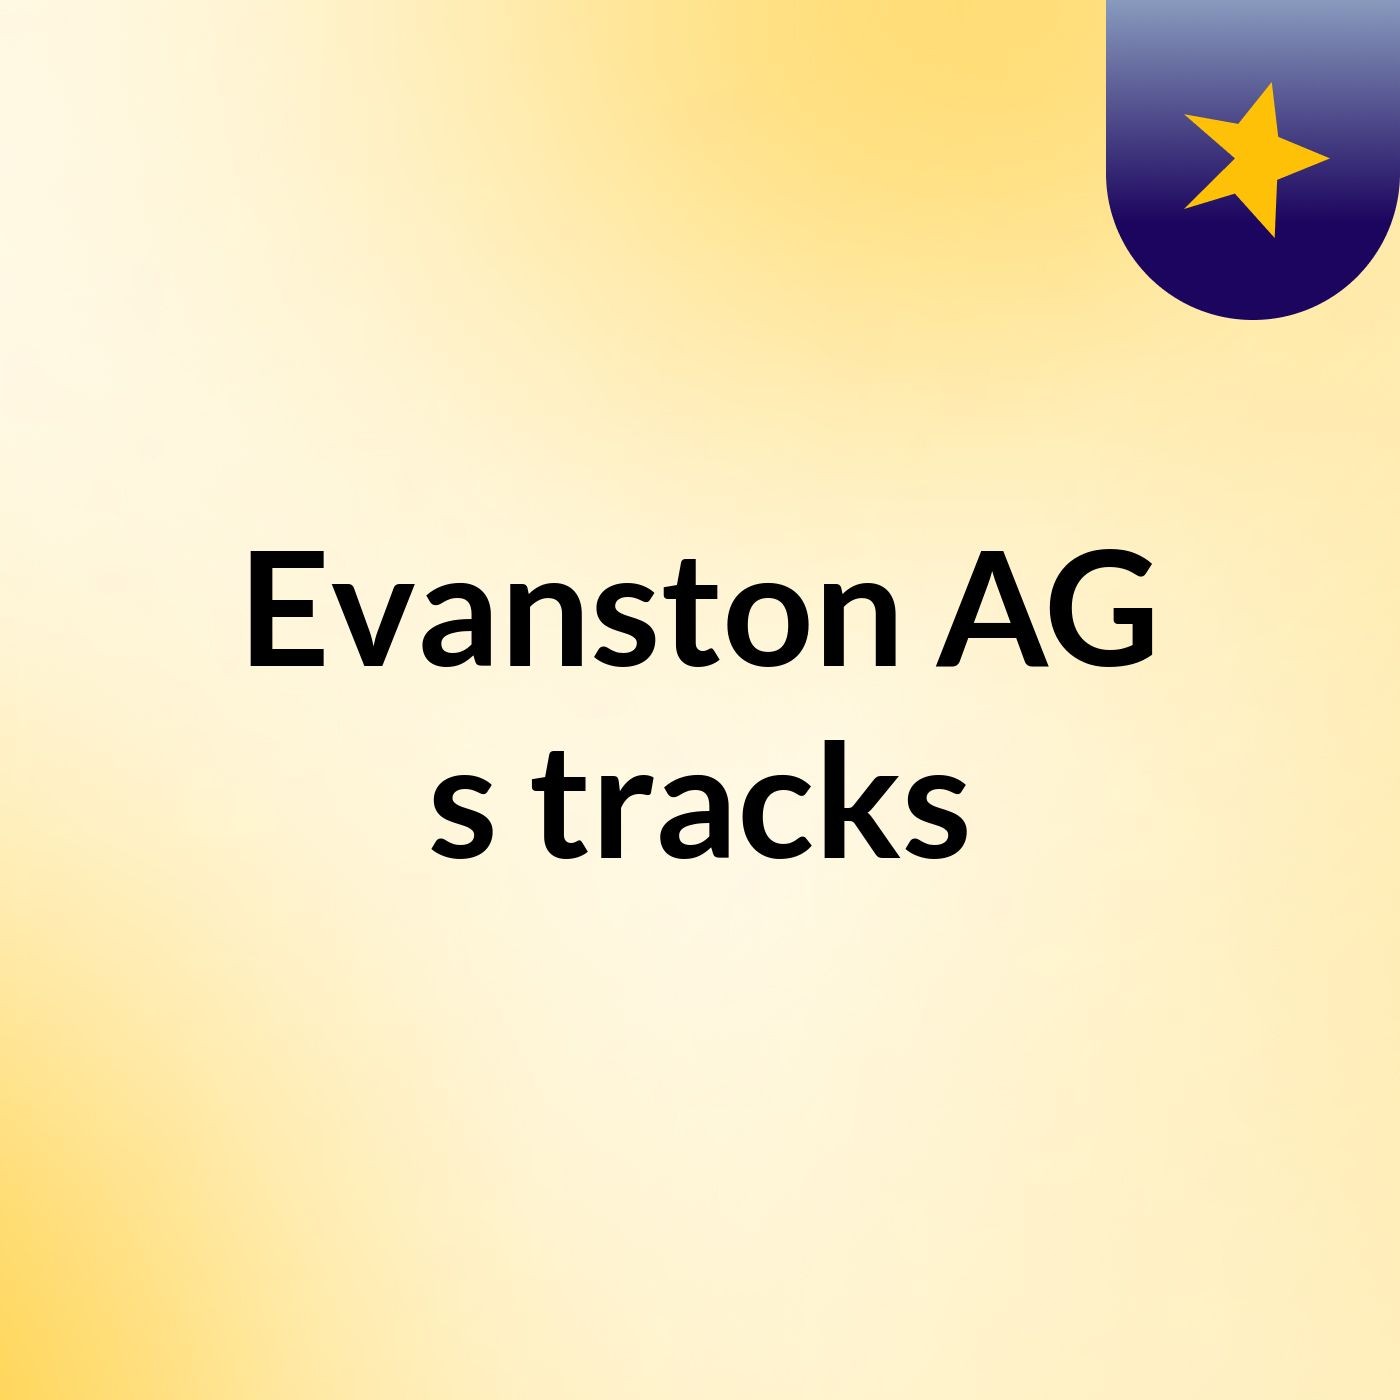 Evanston AG's tracks